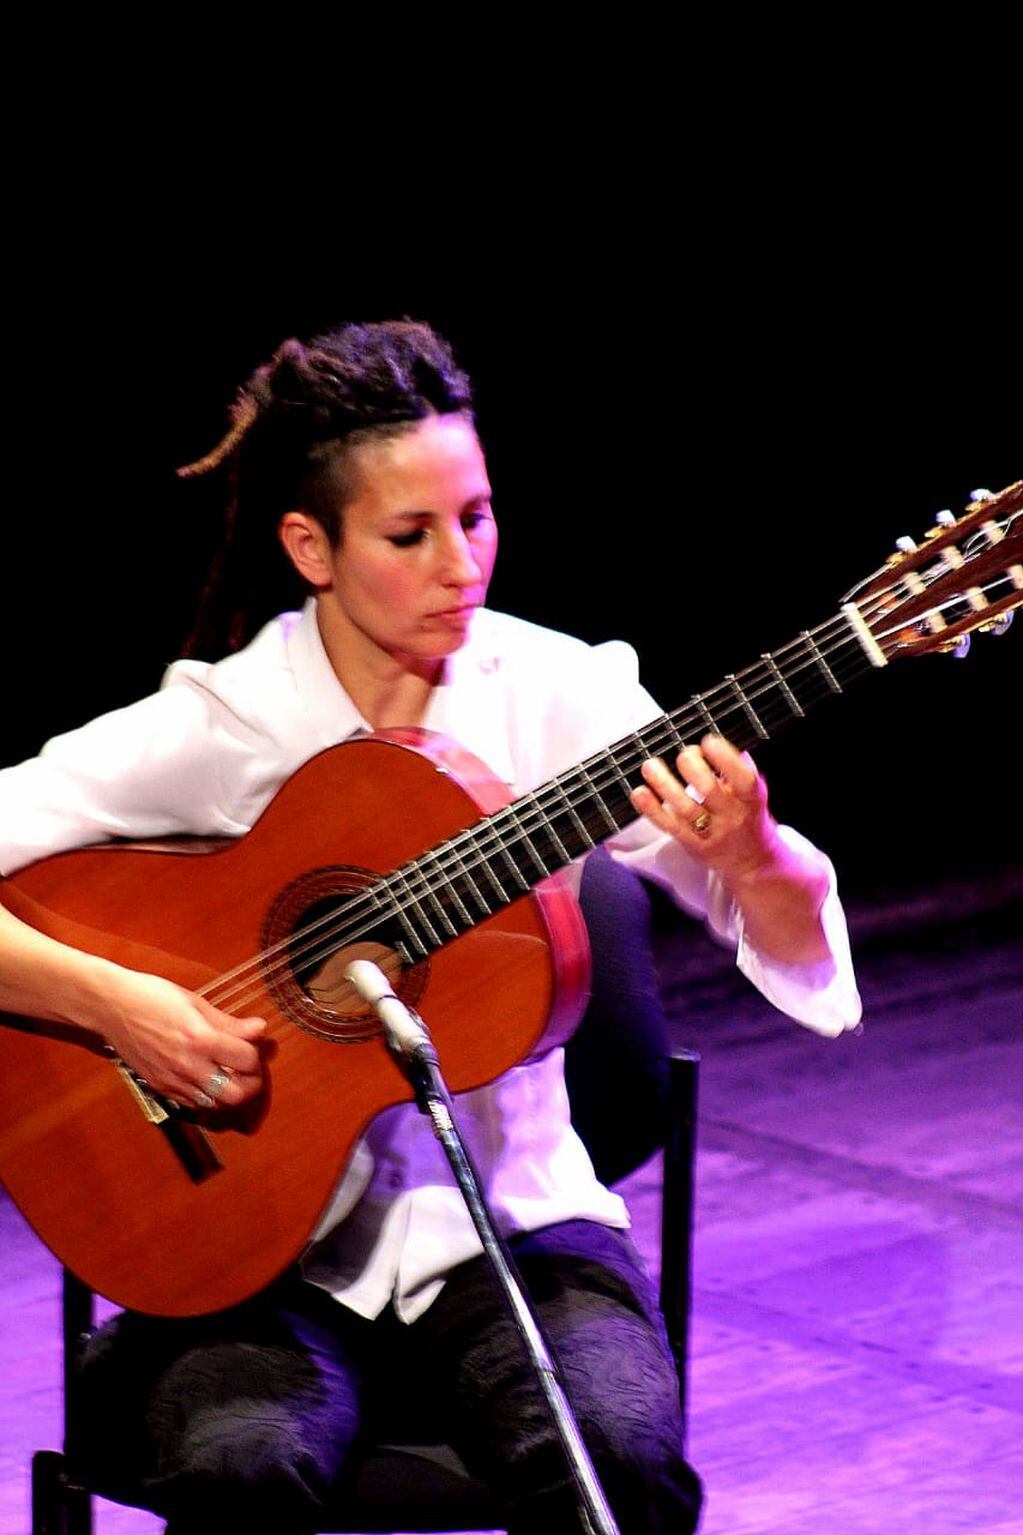 La artista toca música cuyana, hace de primera o tercera guitarra en el cuarteto del que es parte.